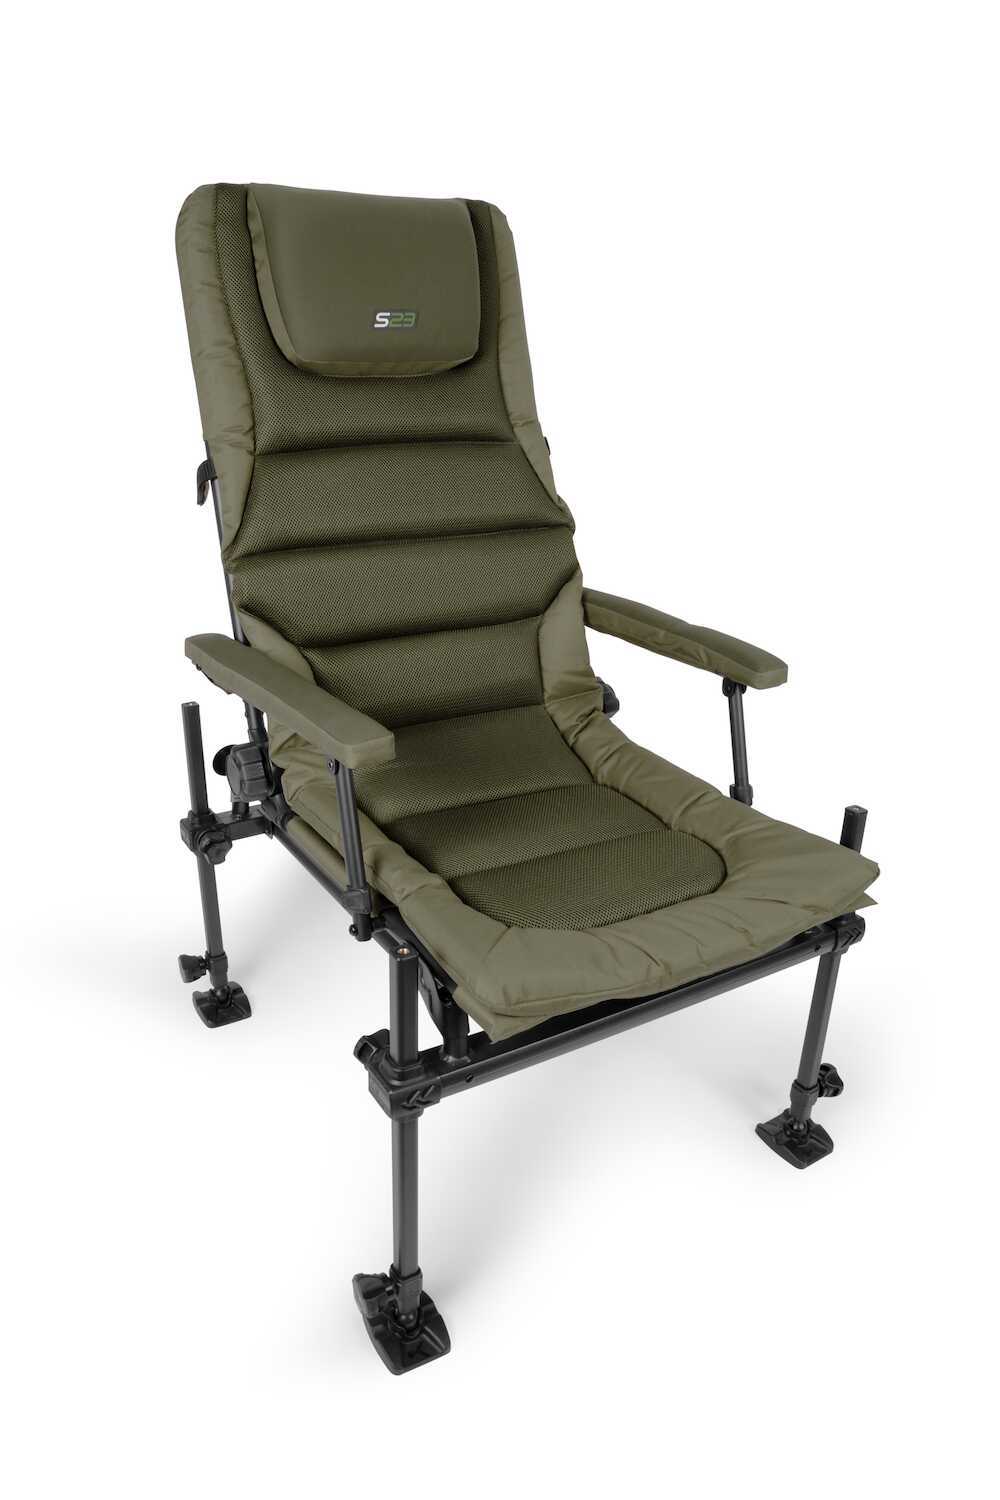 Korum S23 Supa Deluxe Accessory Chair II